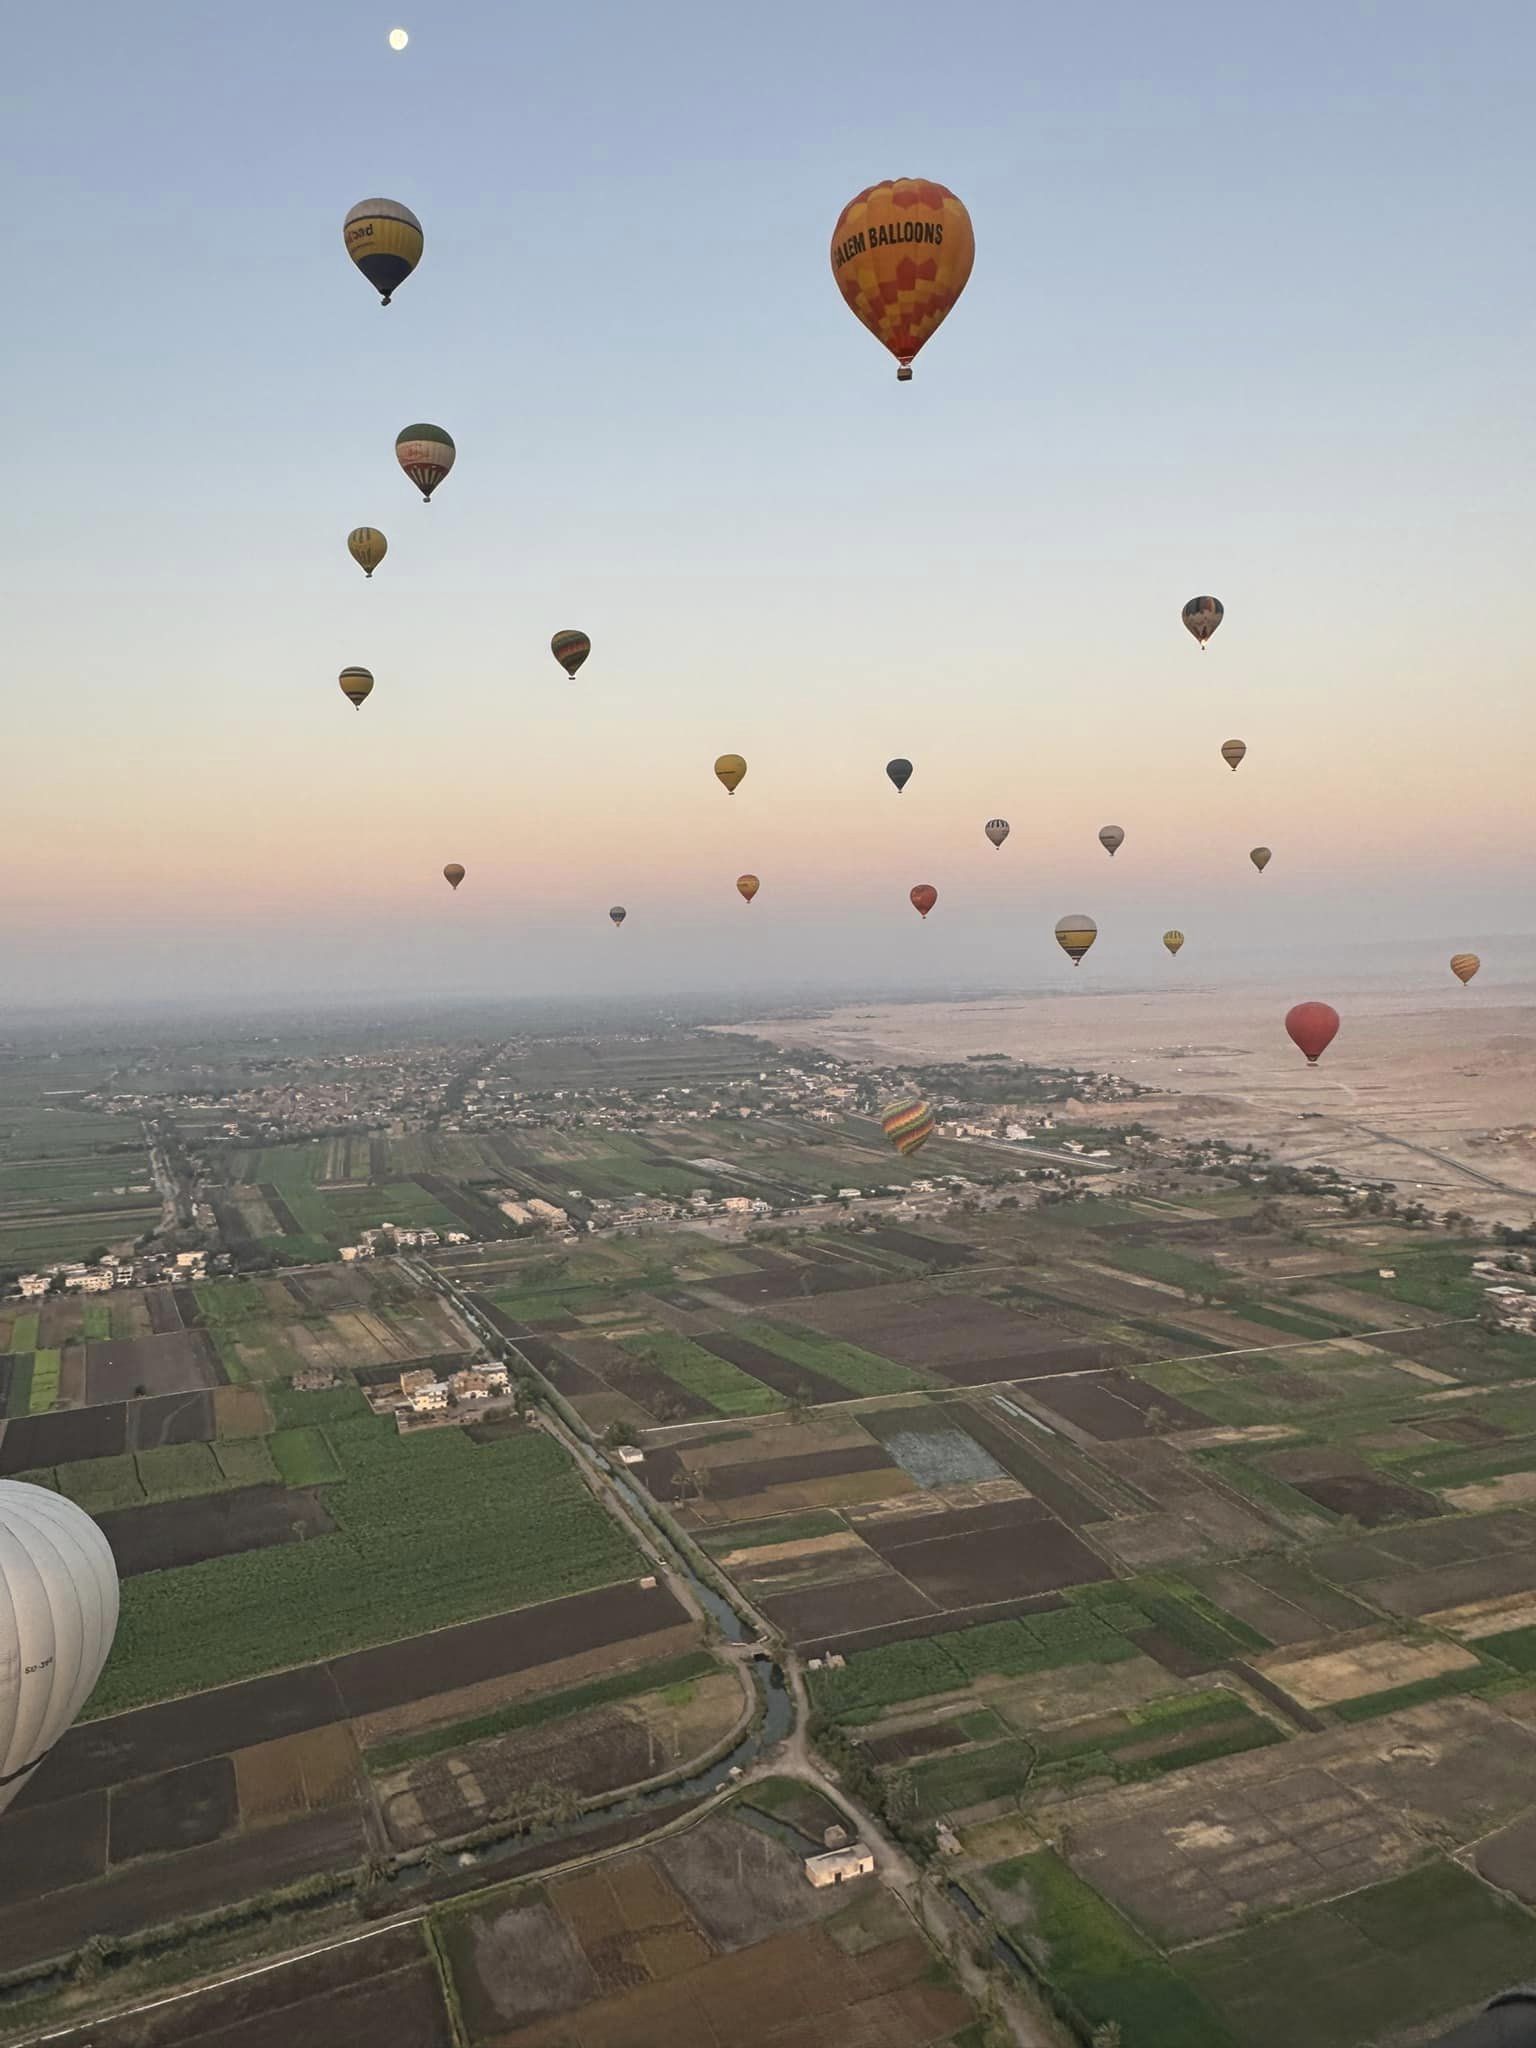 سحر البالونات الطائرة فى سماء الأقصر